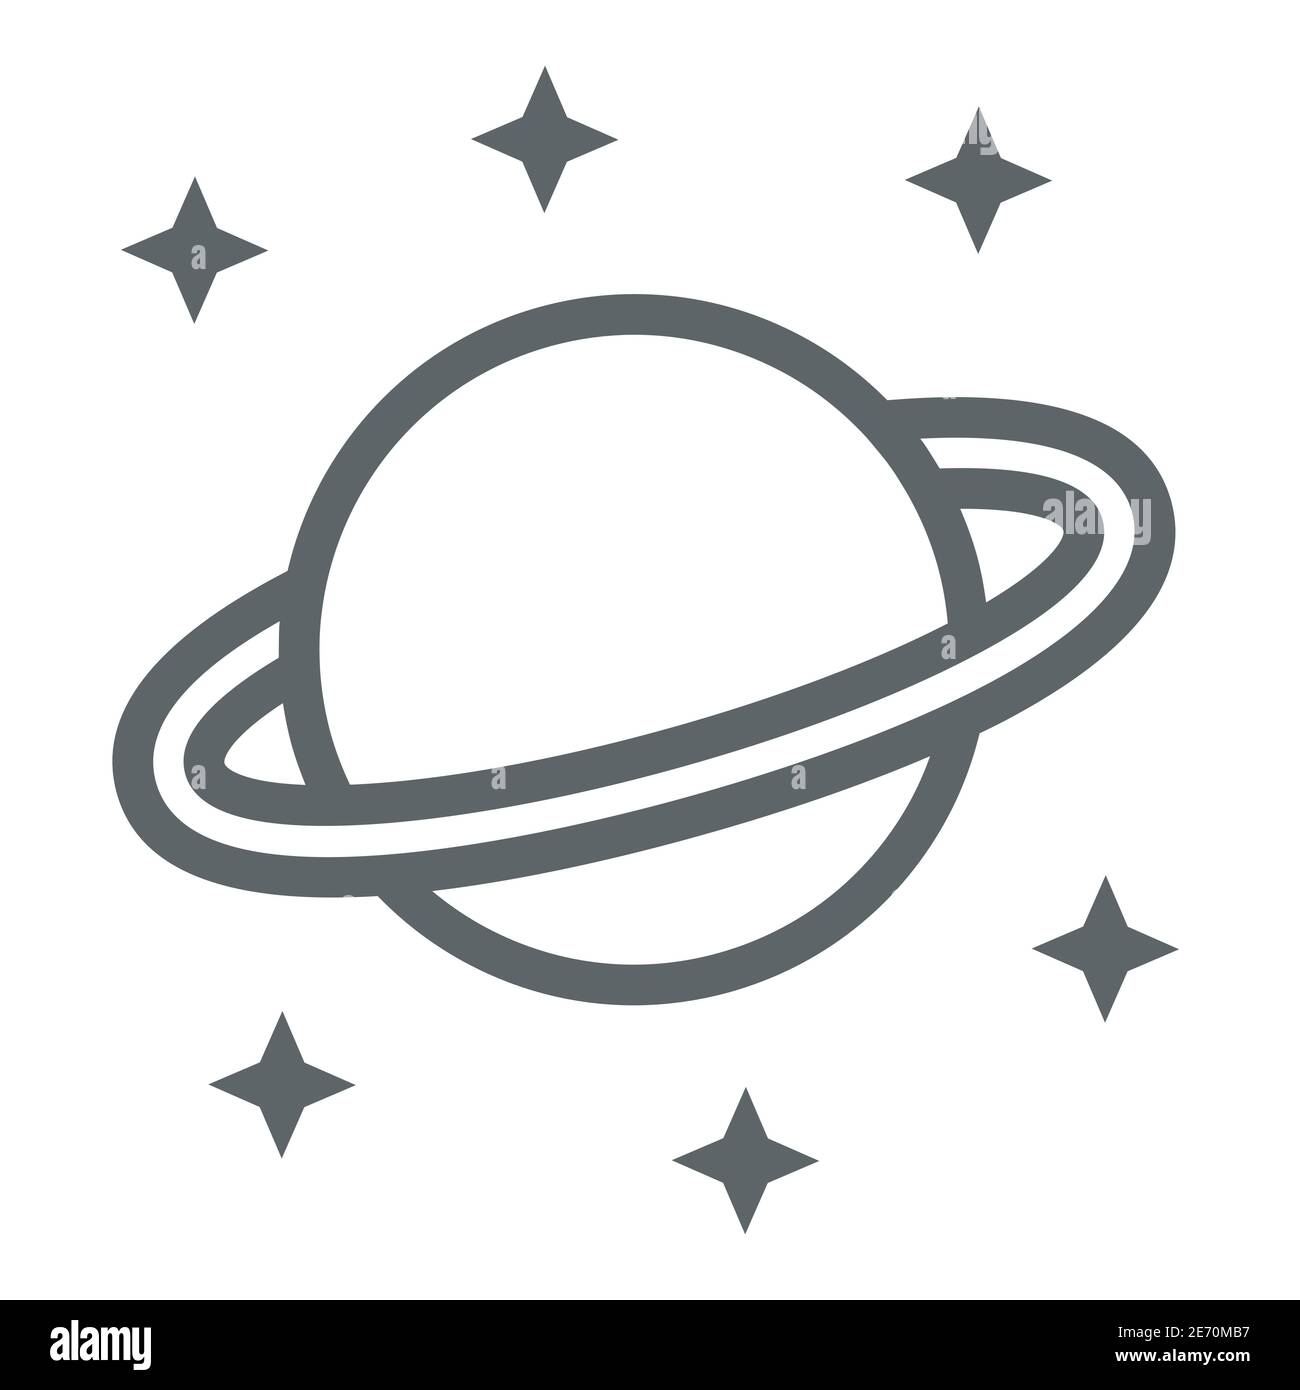 Icona della linea Planet Saturn, concetto di spazio, segno del pianeta e delle stelle su sfondo bianco, Saturno con icona del sistema planetario ad anello in stile contorno per dispositivi mobili Illustrazione Vettoriale